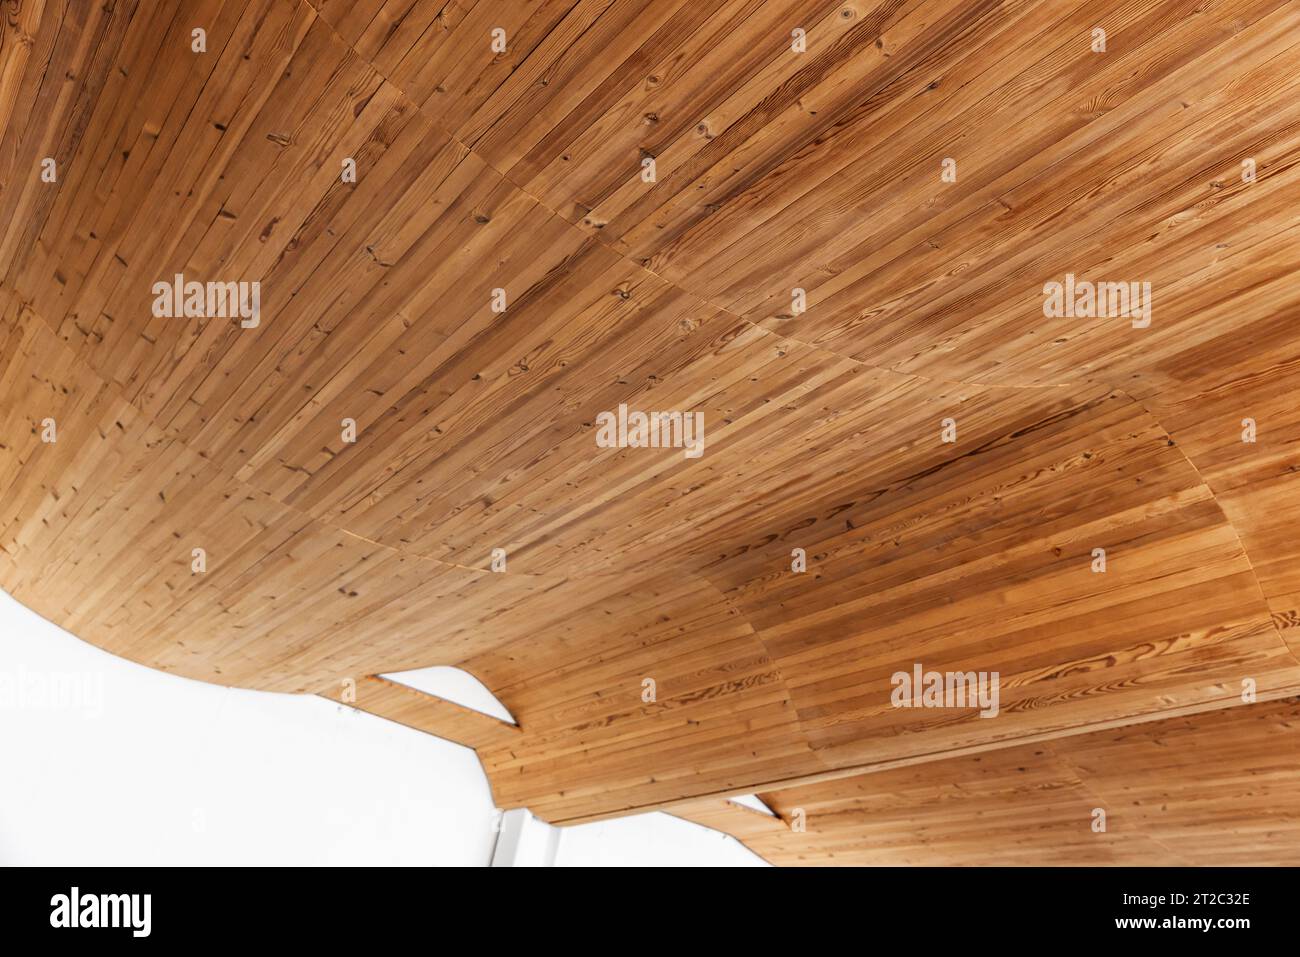 Intérieur vide avec plafond plié en planches de bois, photo de fond d'architecture paramétrique Banque D'Images